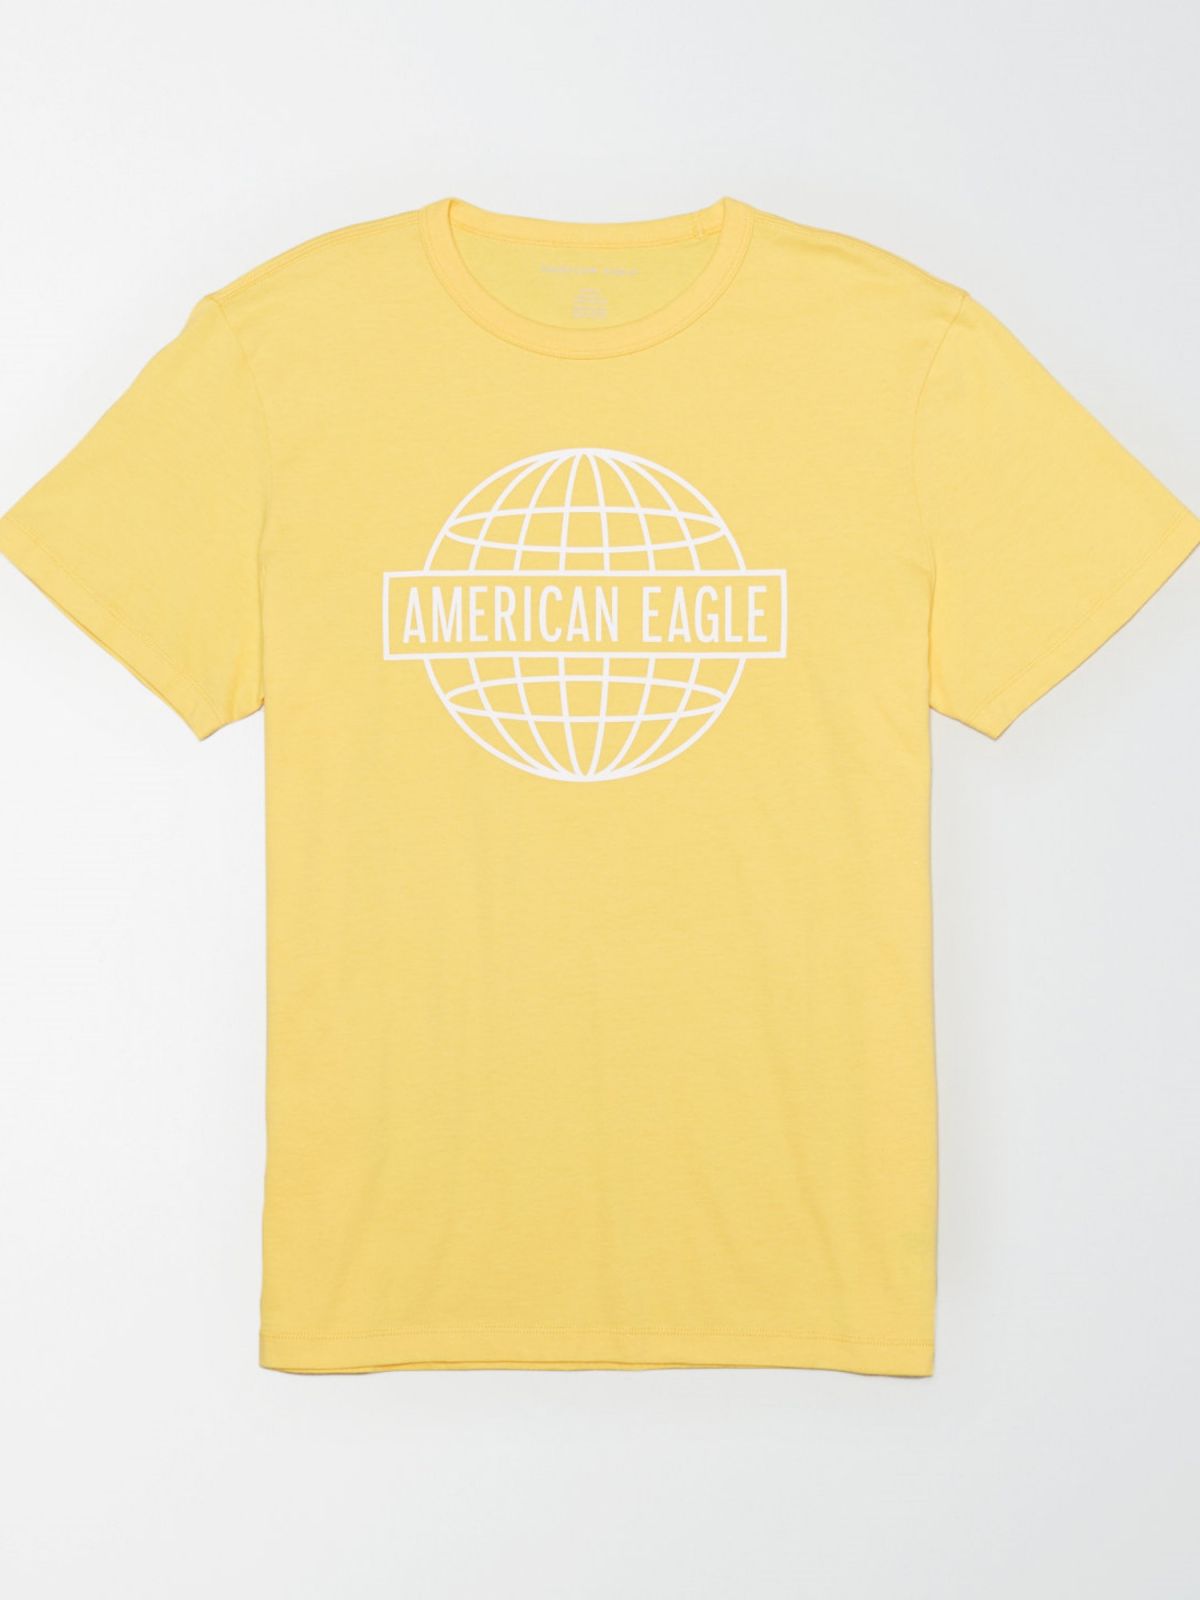  טי שירט עם הדפס גלובוס לוגו של AMERICAN EAGLE